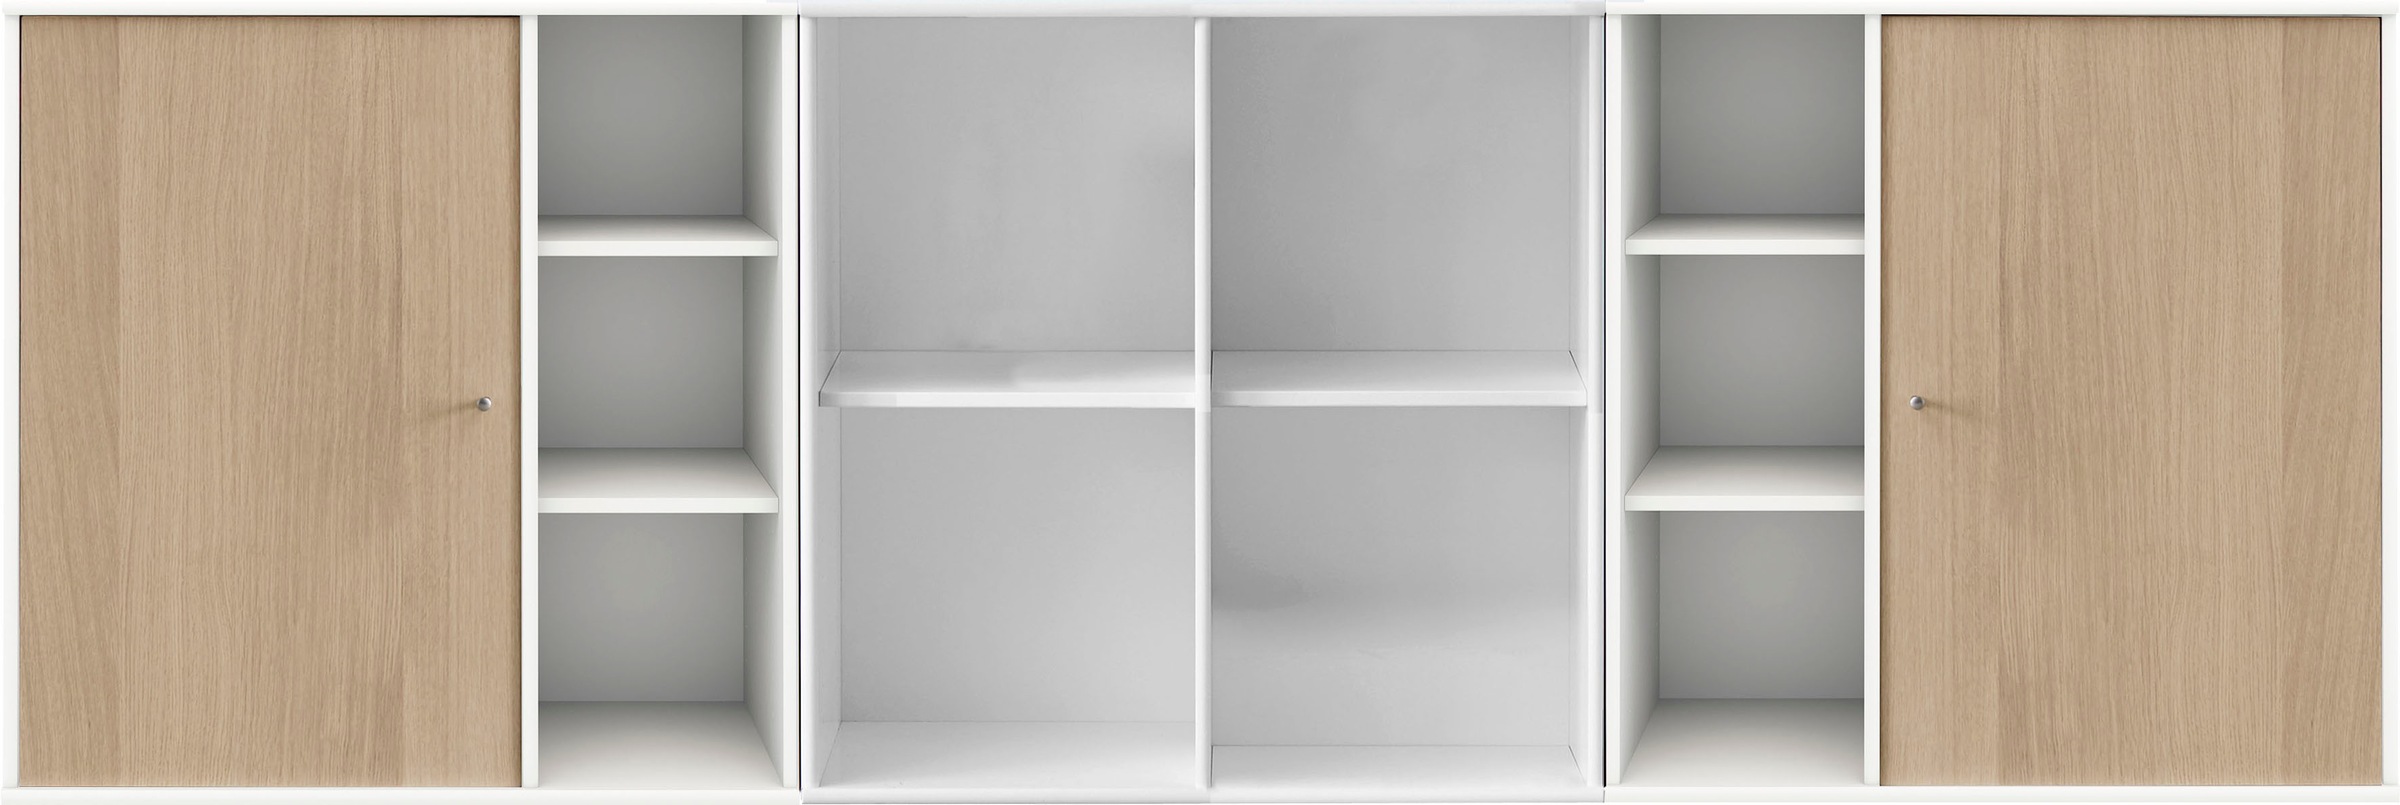 Hammel Furniture Sideboard »Mistral Kubus«, Kombination aus 3 Modulen, 2 Türen, Wandmontage/stehend, Breite: 207cm